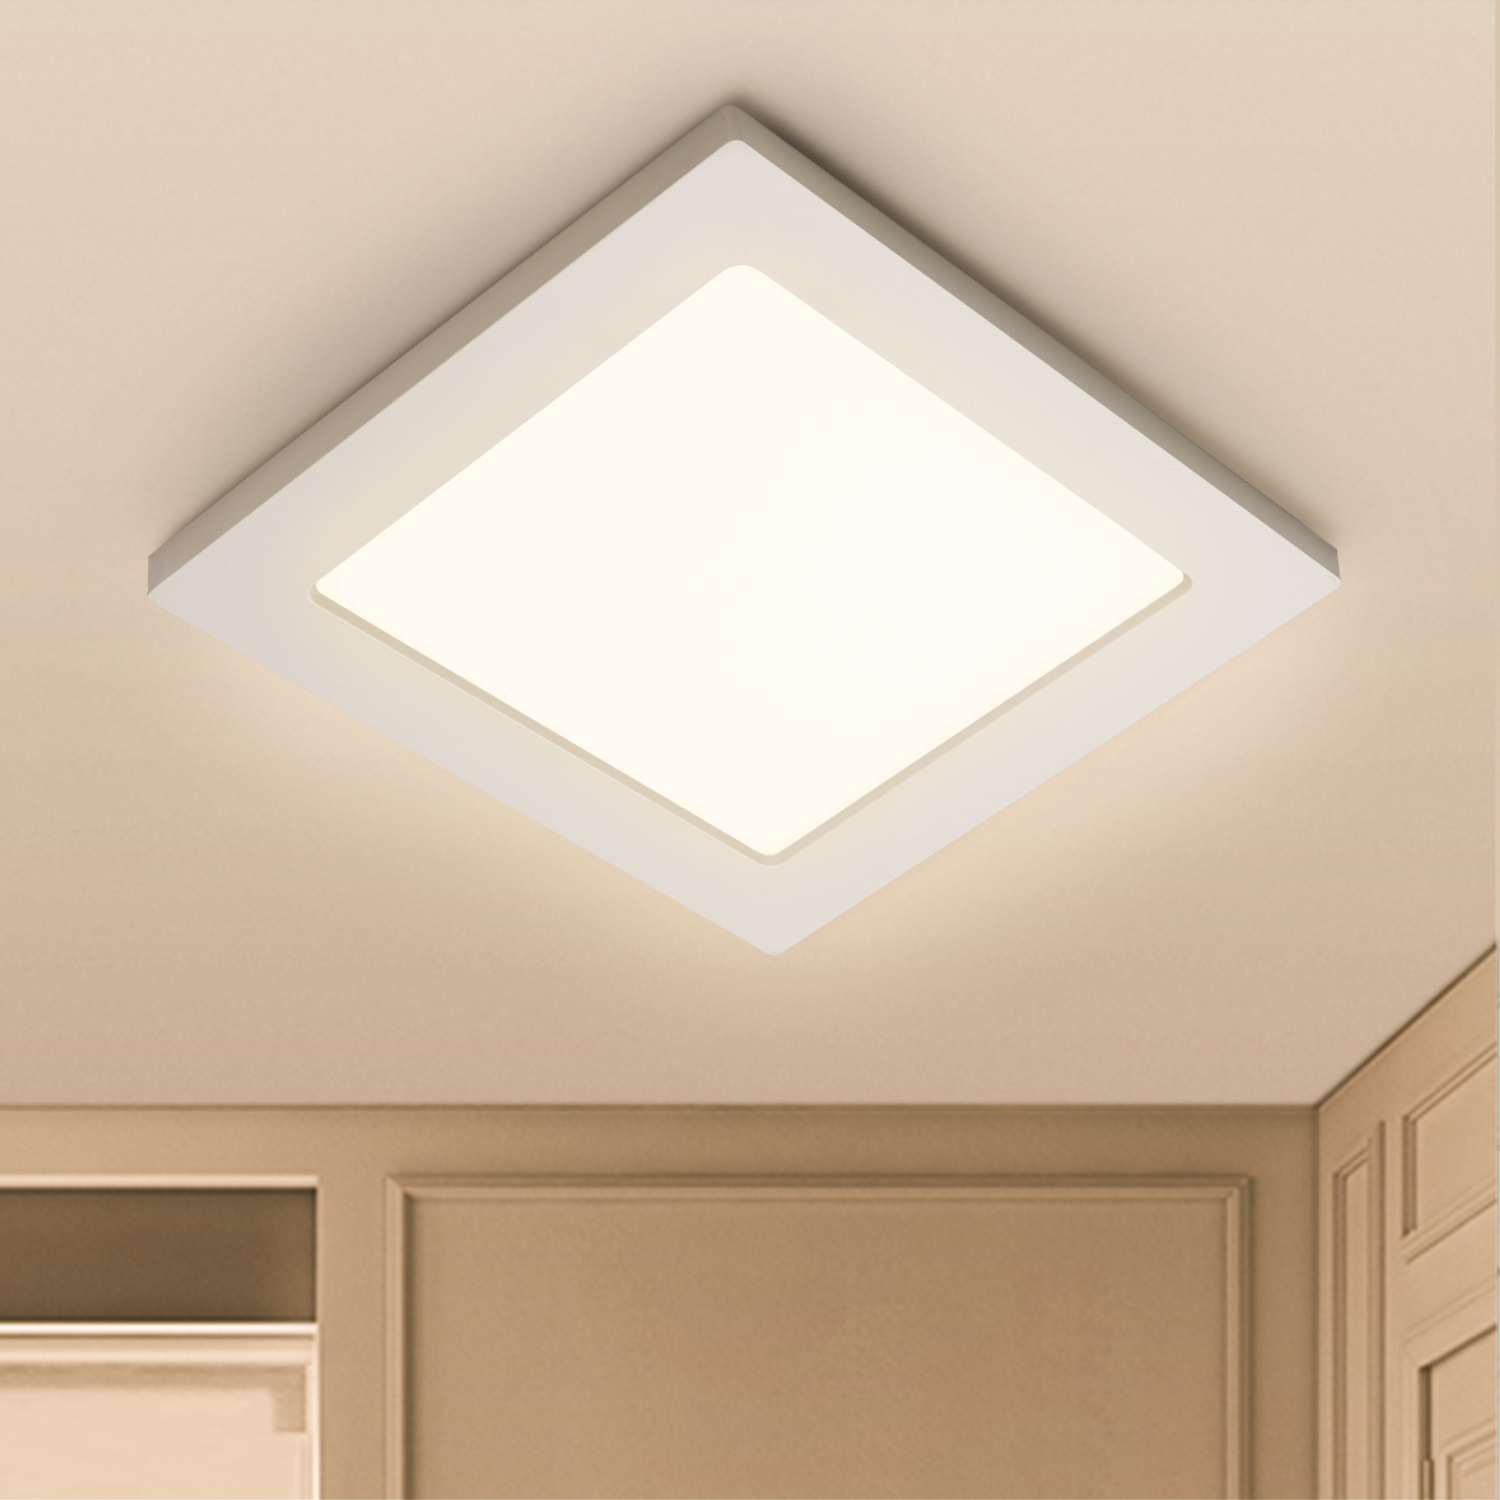 Aigostar 16W Plafoniera LED soffitto quadrata, 1180LM, luce naturale 4000K. Lampada da Soffitto da 172x172mm e 34,5 mm di altezza, ideale cucina, corridoi, camere da letto, ecc. Equivalente a 82W